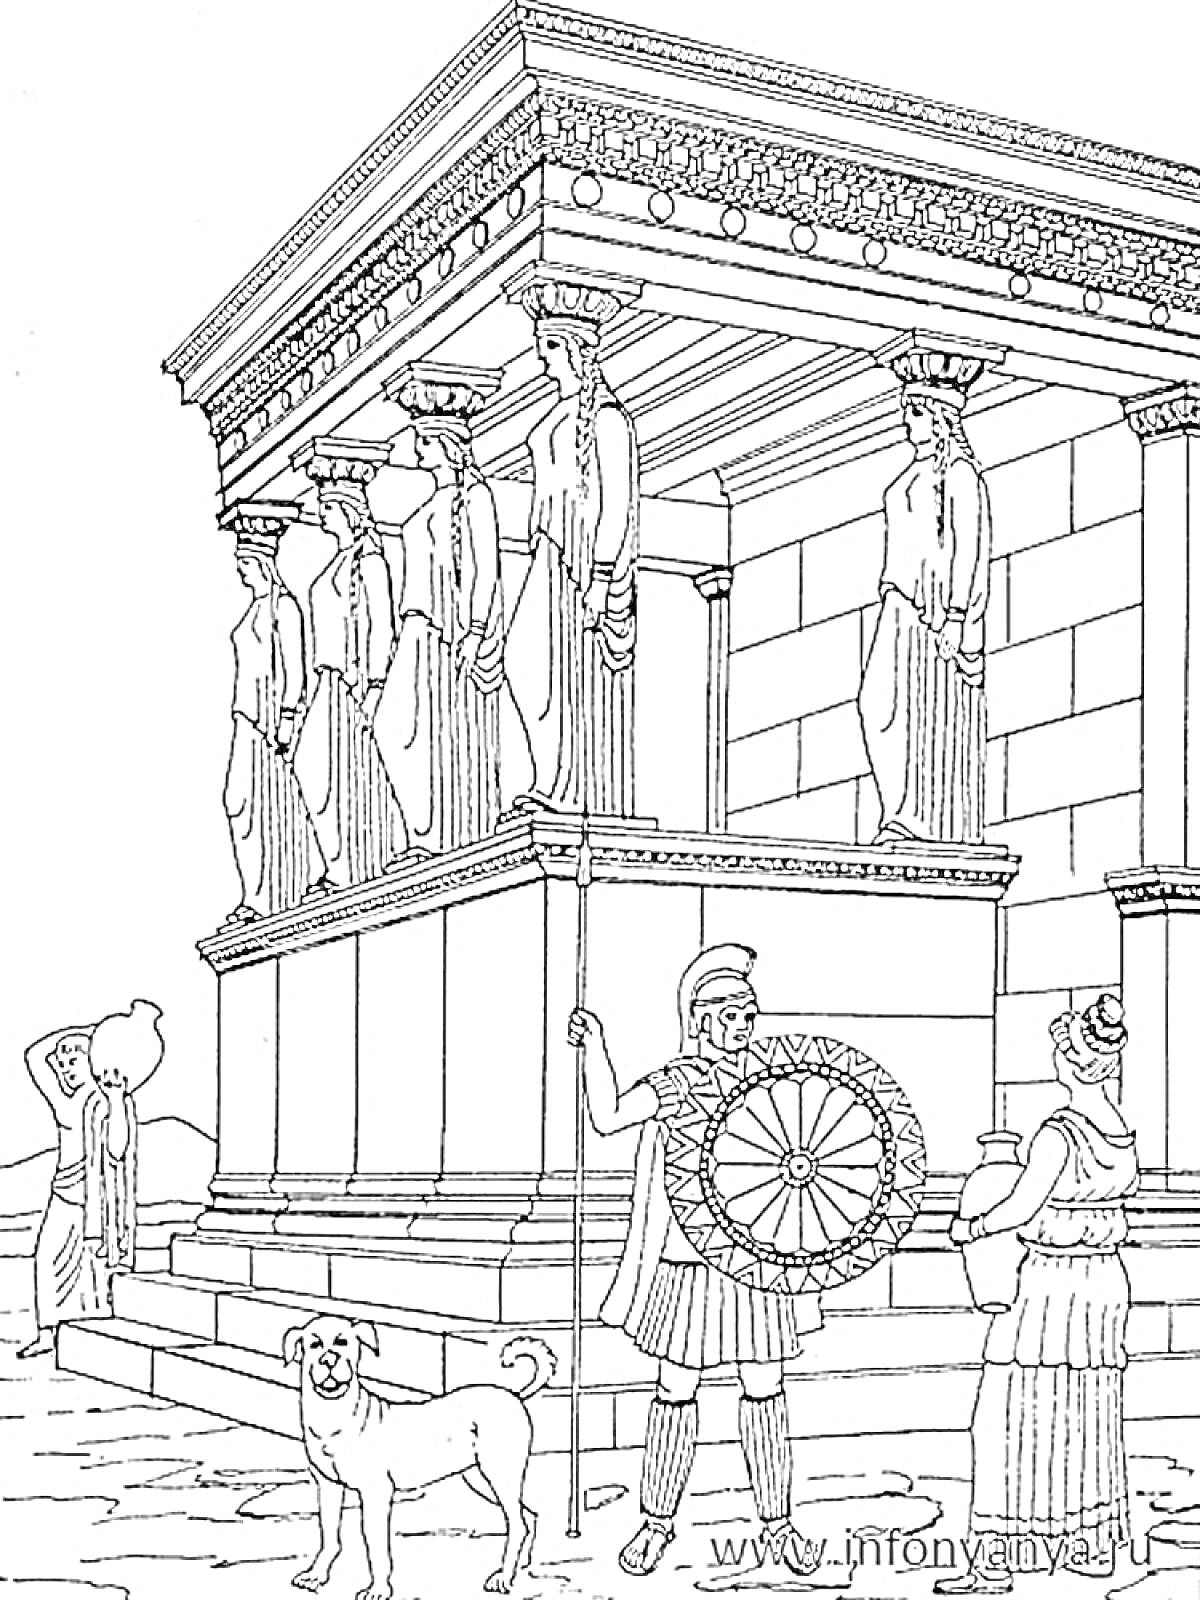 Древнегреческий храм с кариатидой, солдатом с копьем и щитом, женщиной с кувшином, скульптурами и собакой